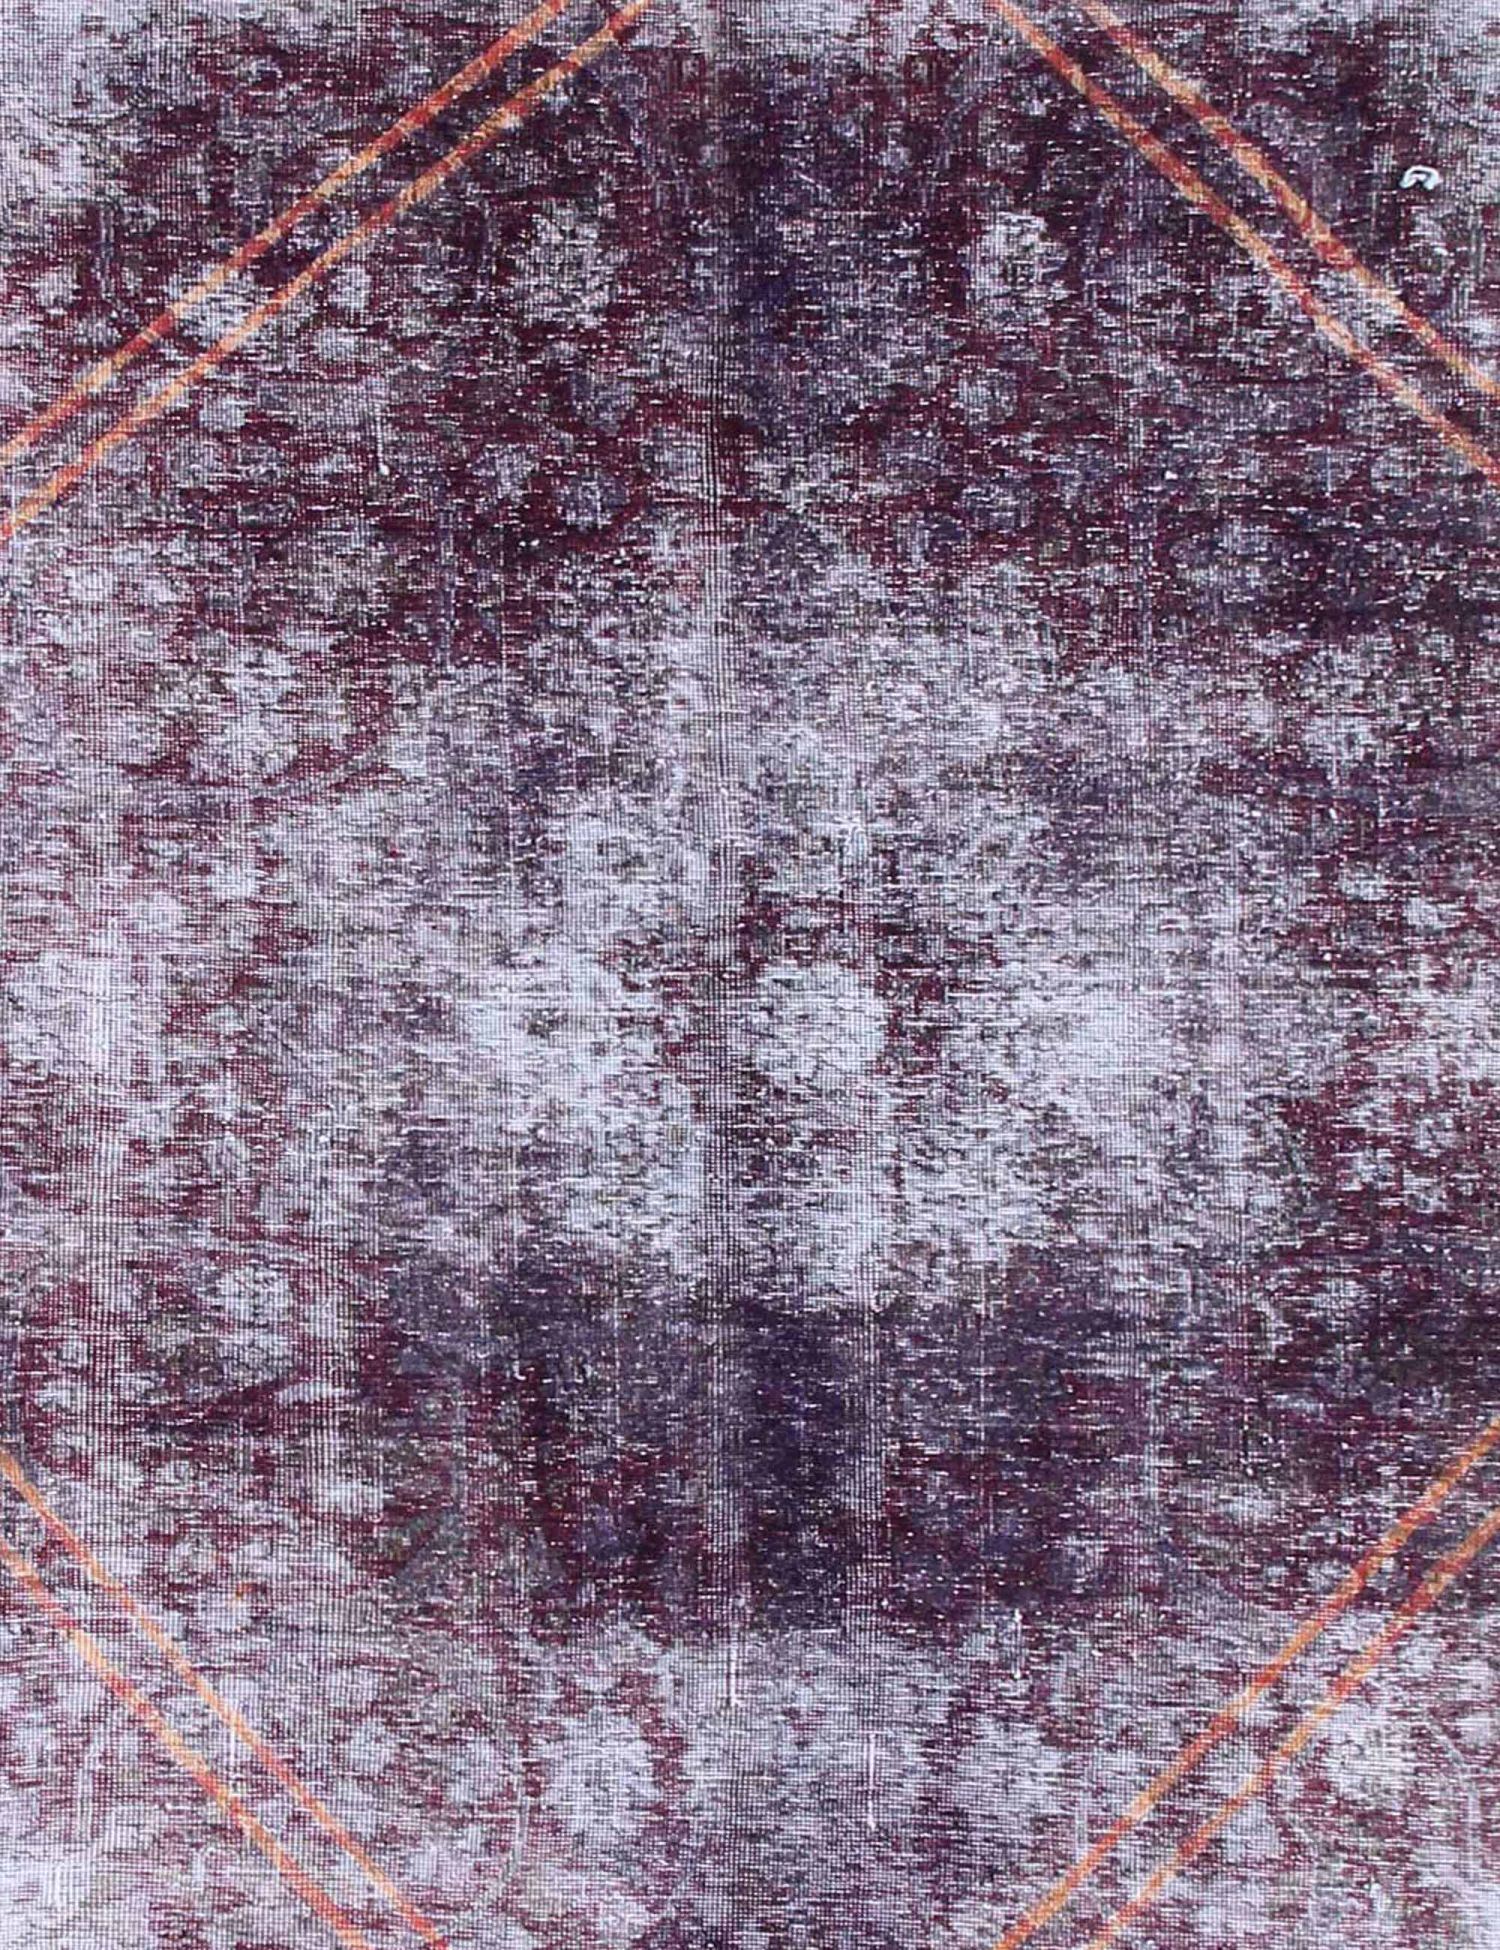 Persischer Vintage Teppich  lila <br/>300 x 200 cm